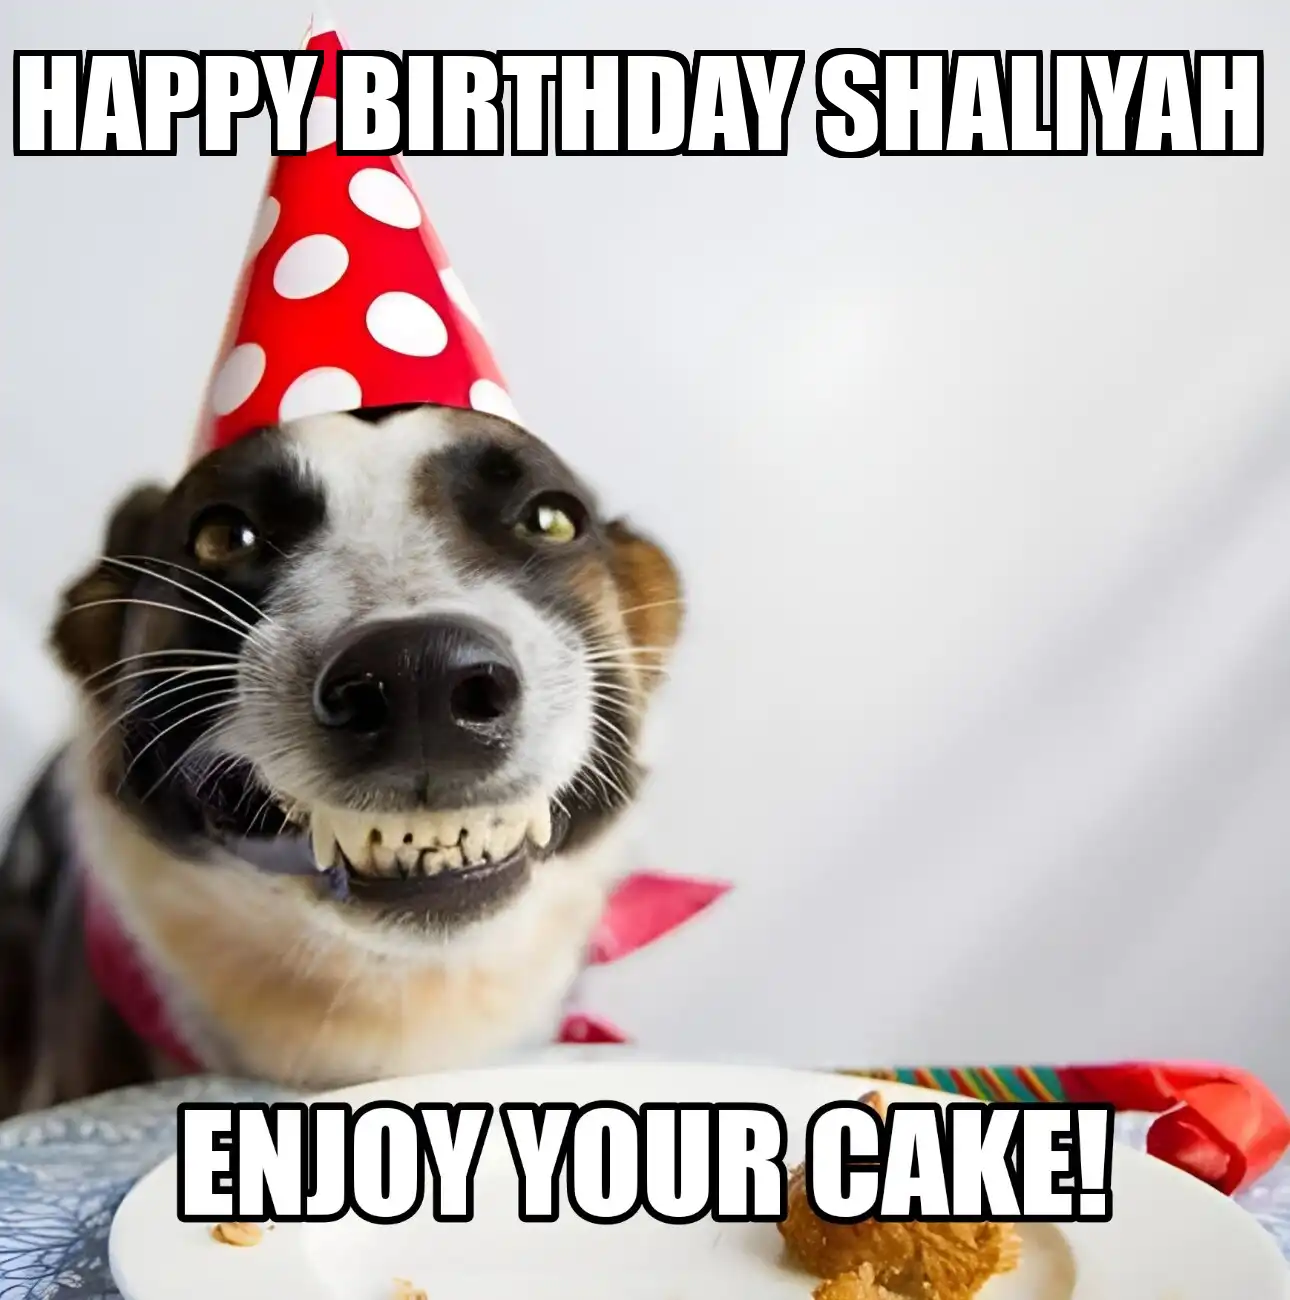 Happy Birthday Shaliyah Enjoy Your Cake Dog Meme